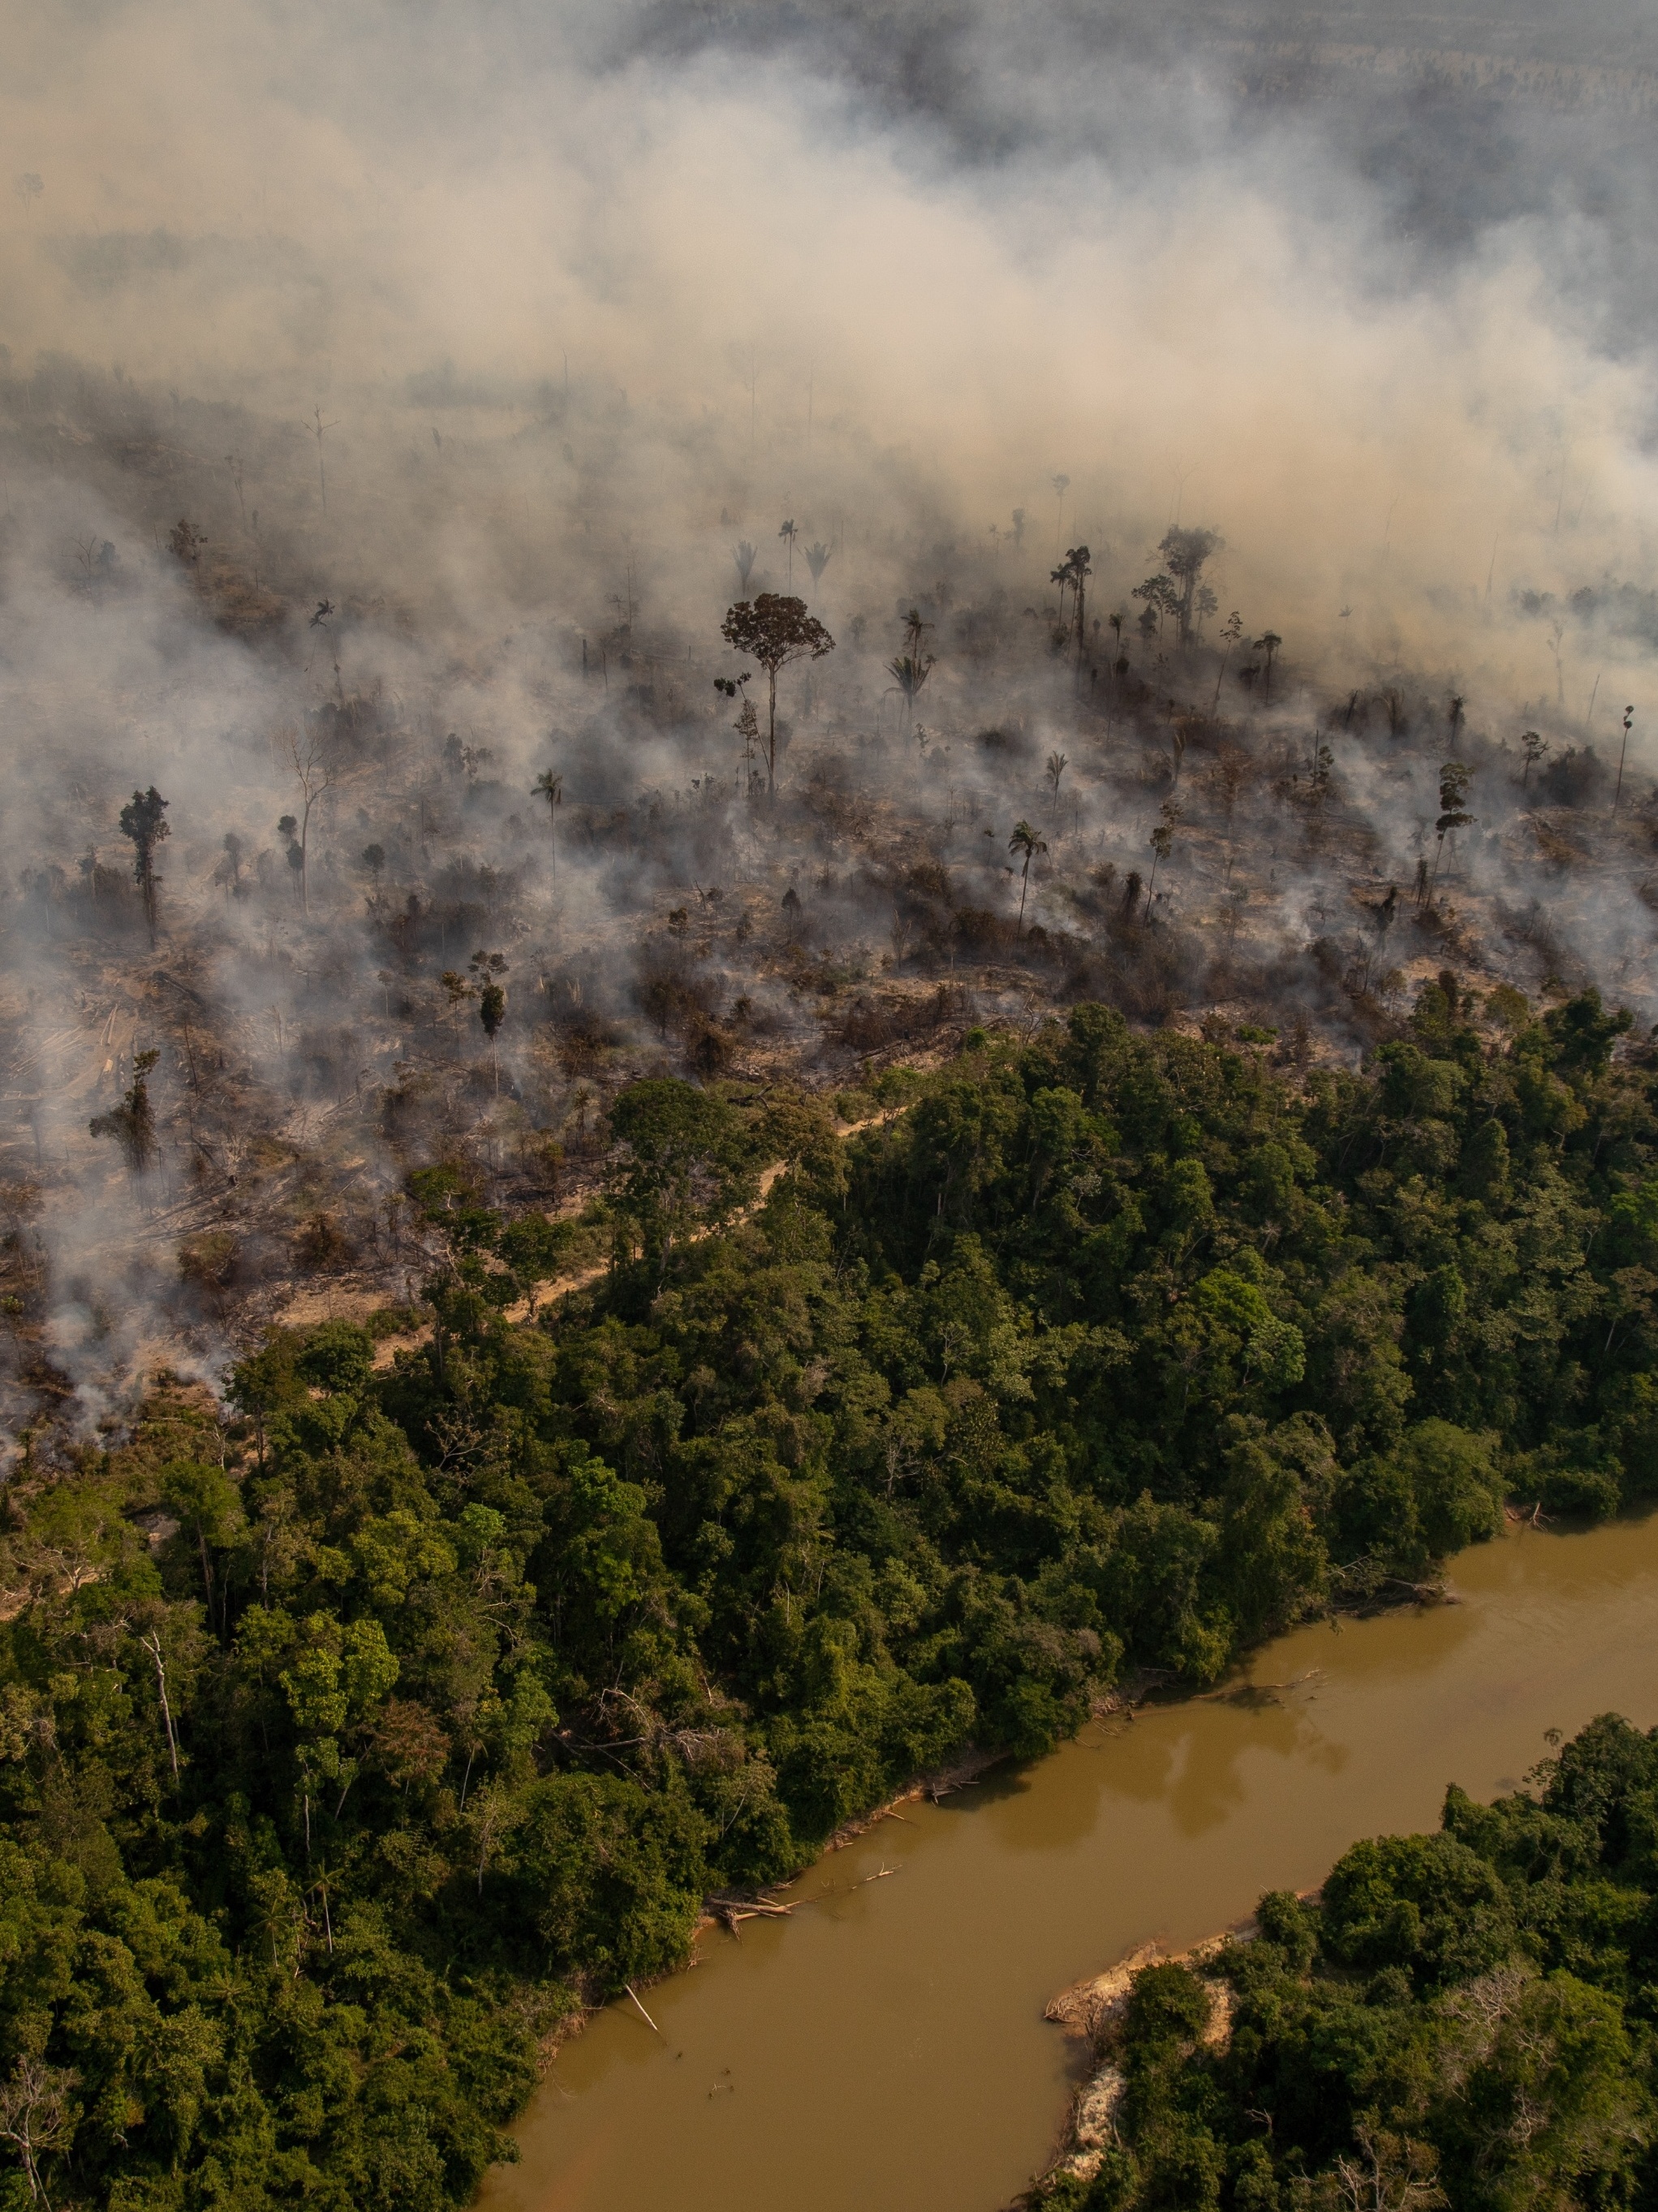 Informações erradas causaram fim do confinamento antes da segunda onda da  Covid-19 na Amazônia - Amazônia Real